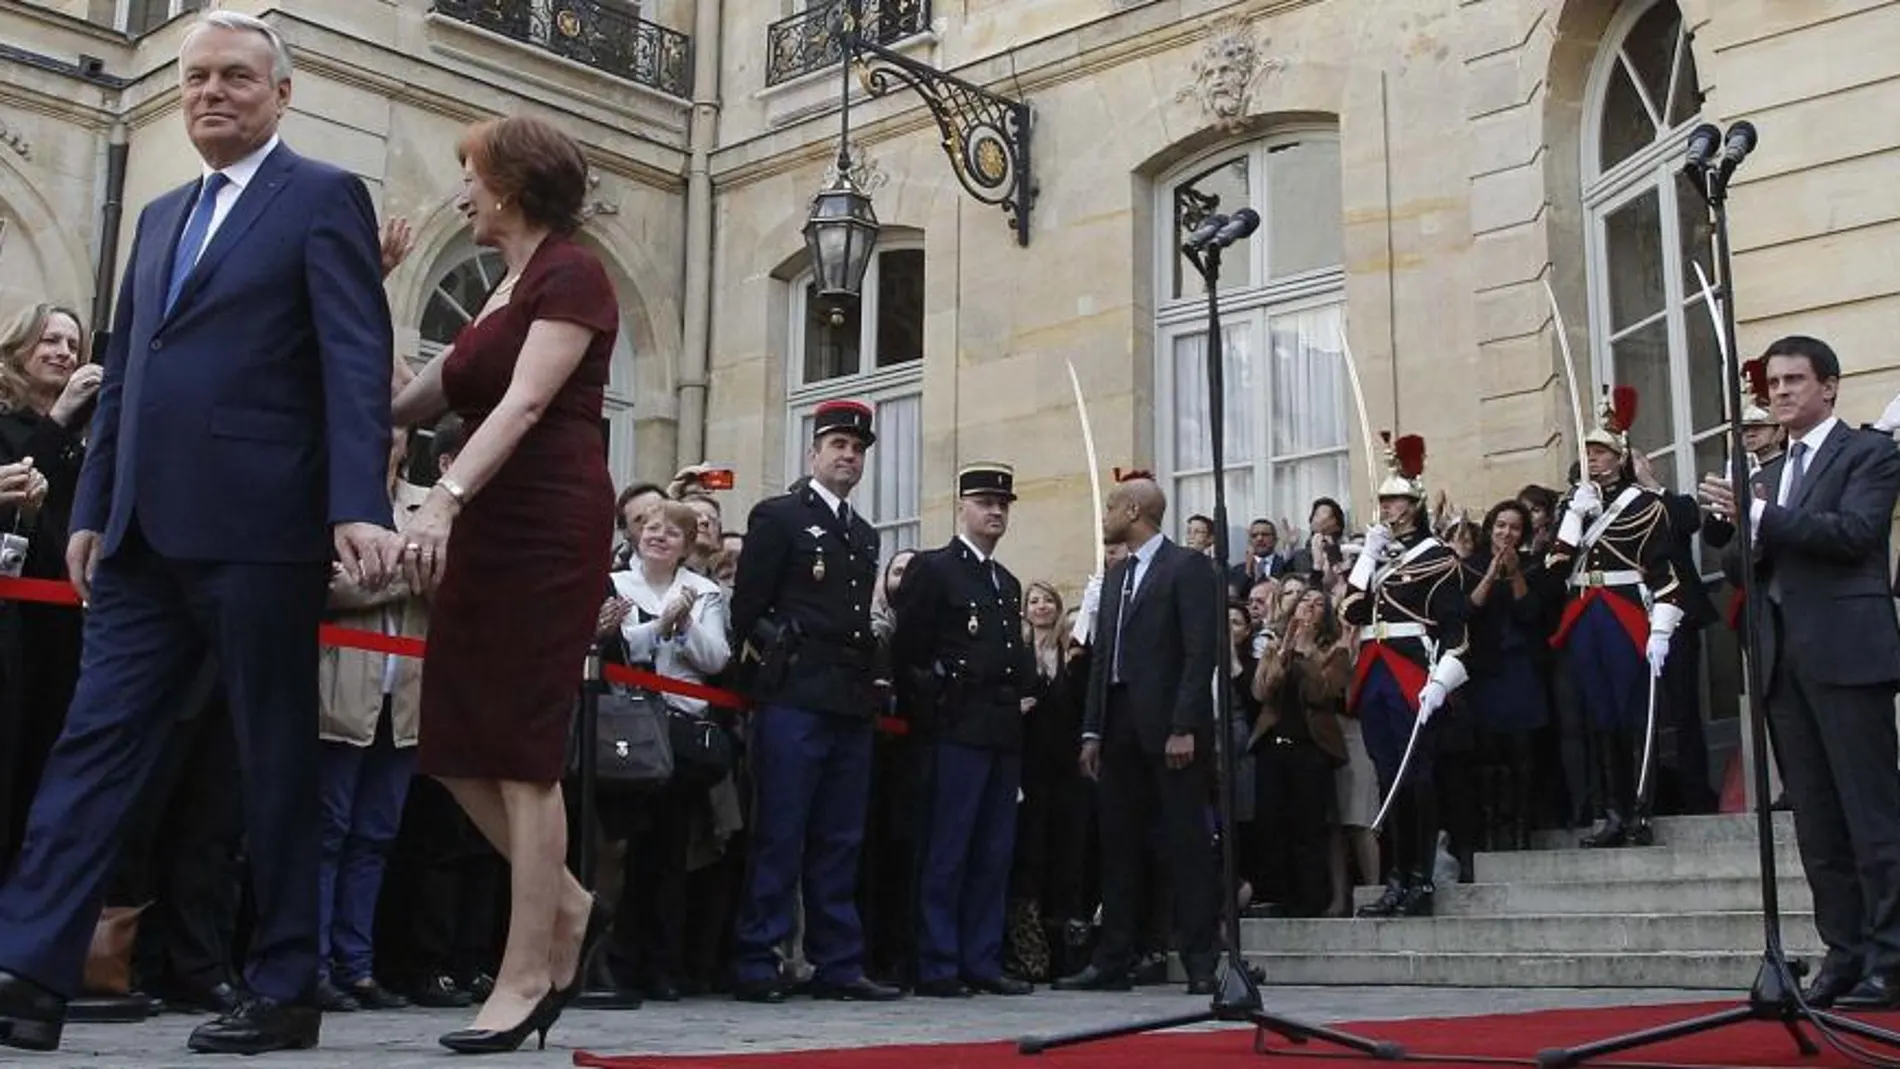 El primer ministro saliente, Jean-Marc Ayrault, y su esposa, abandonan el Hotel Matignon, mientras el nuevo primer ministro, Manuel Valls les mira desde la entrada.